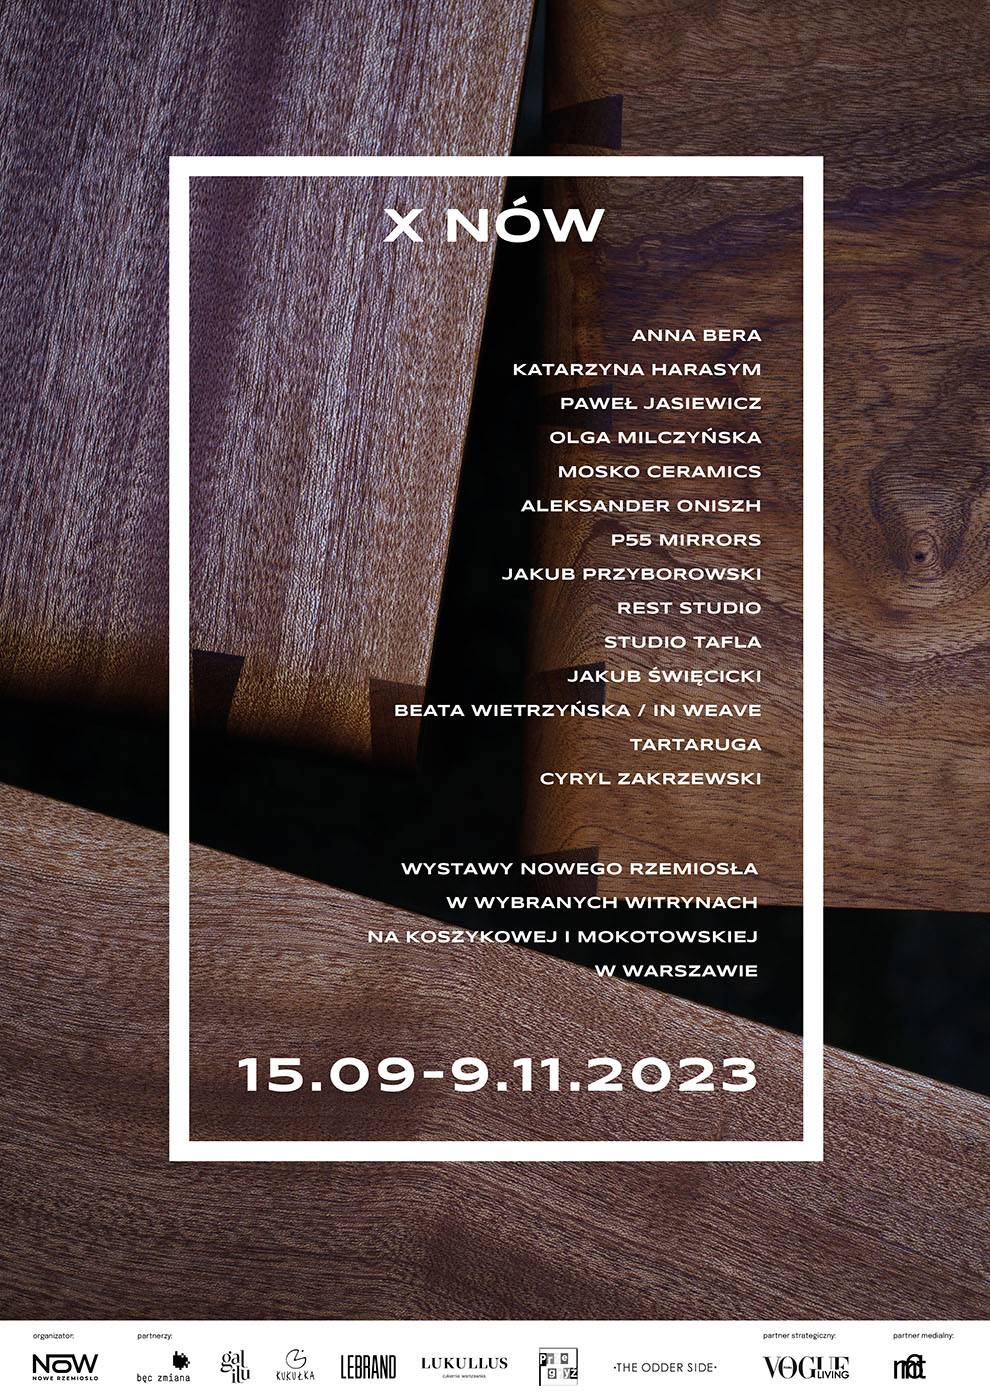 X NÓW, plakat wydarzenia, fot. i projekt: Matylda Polak